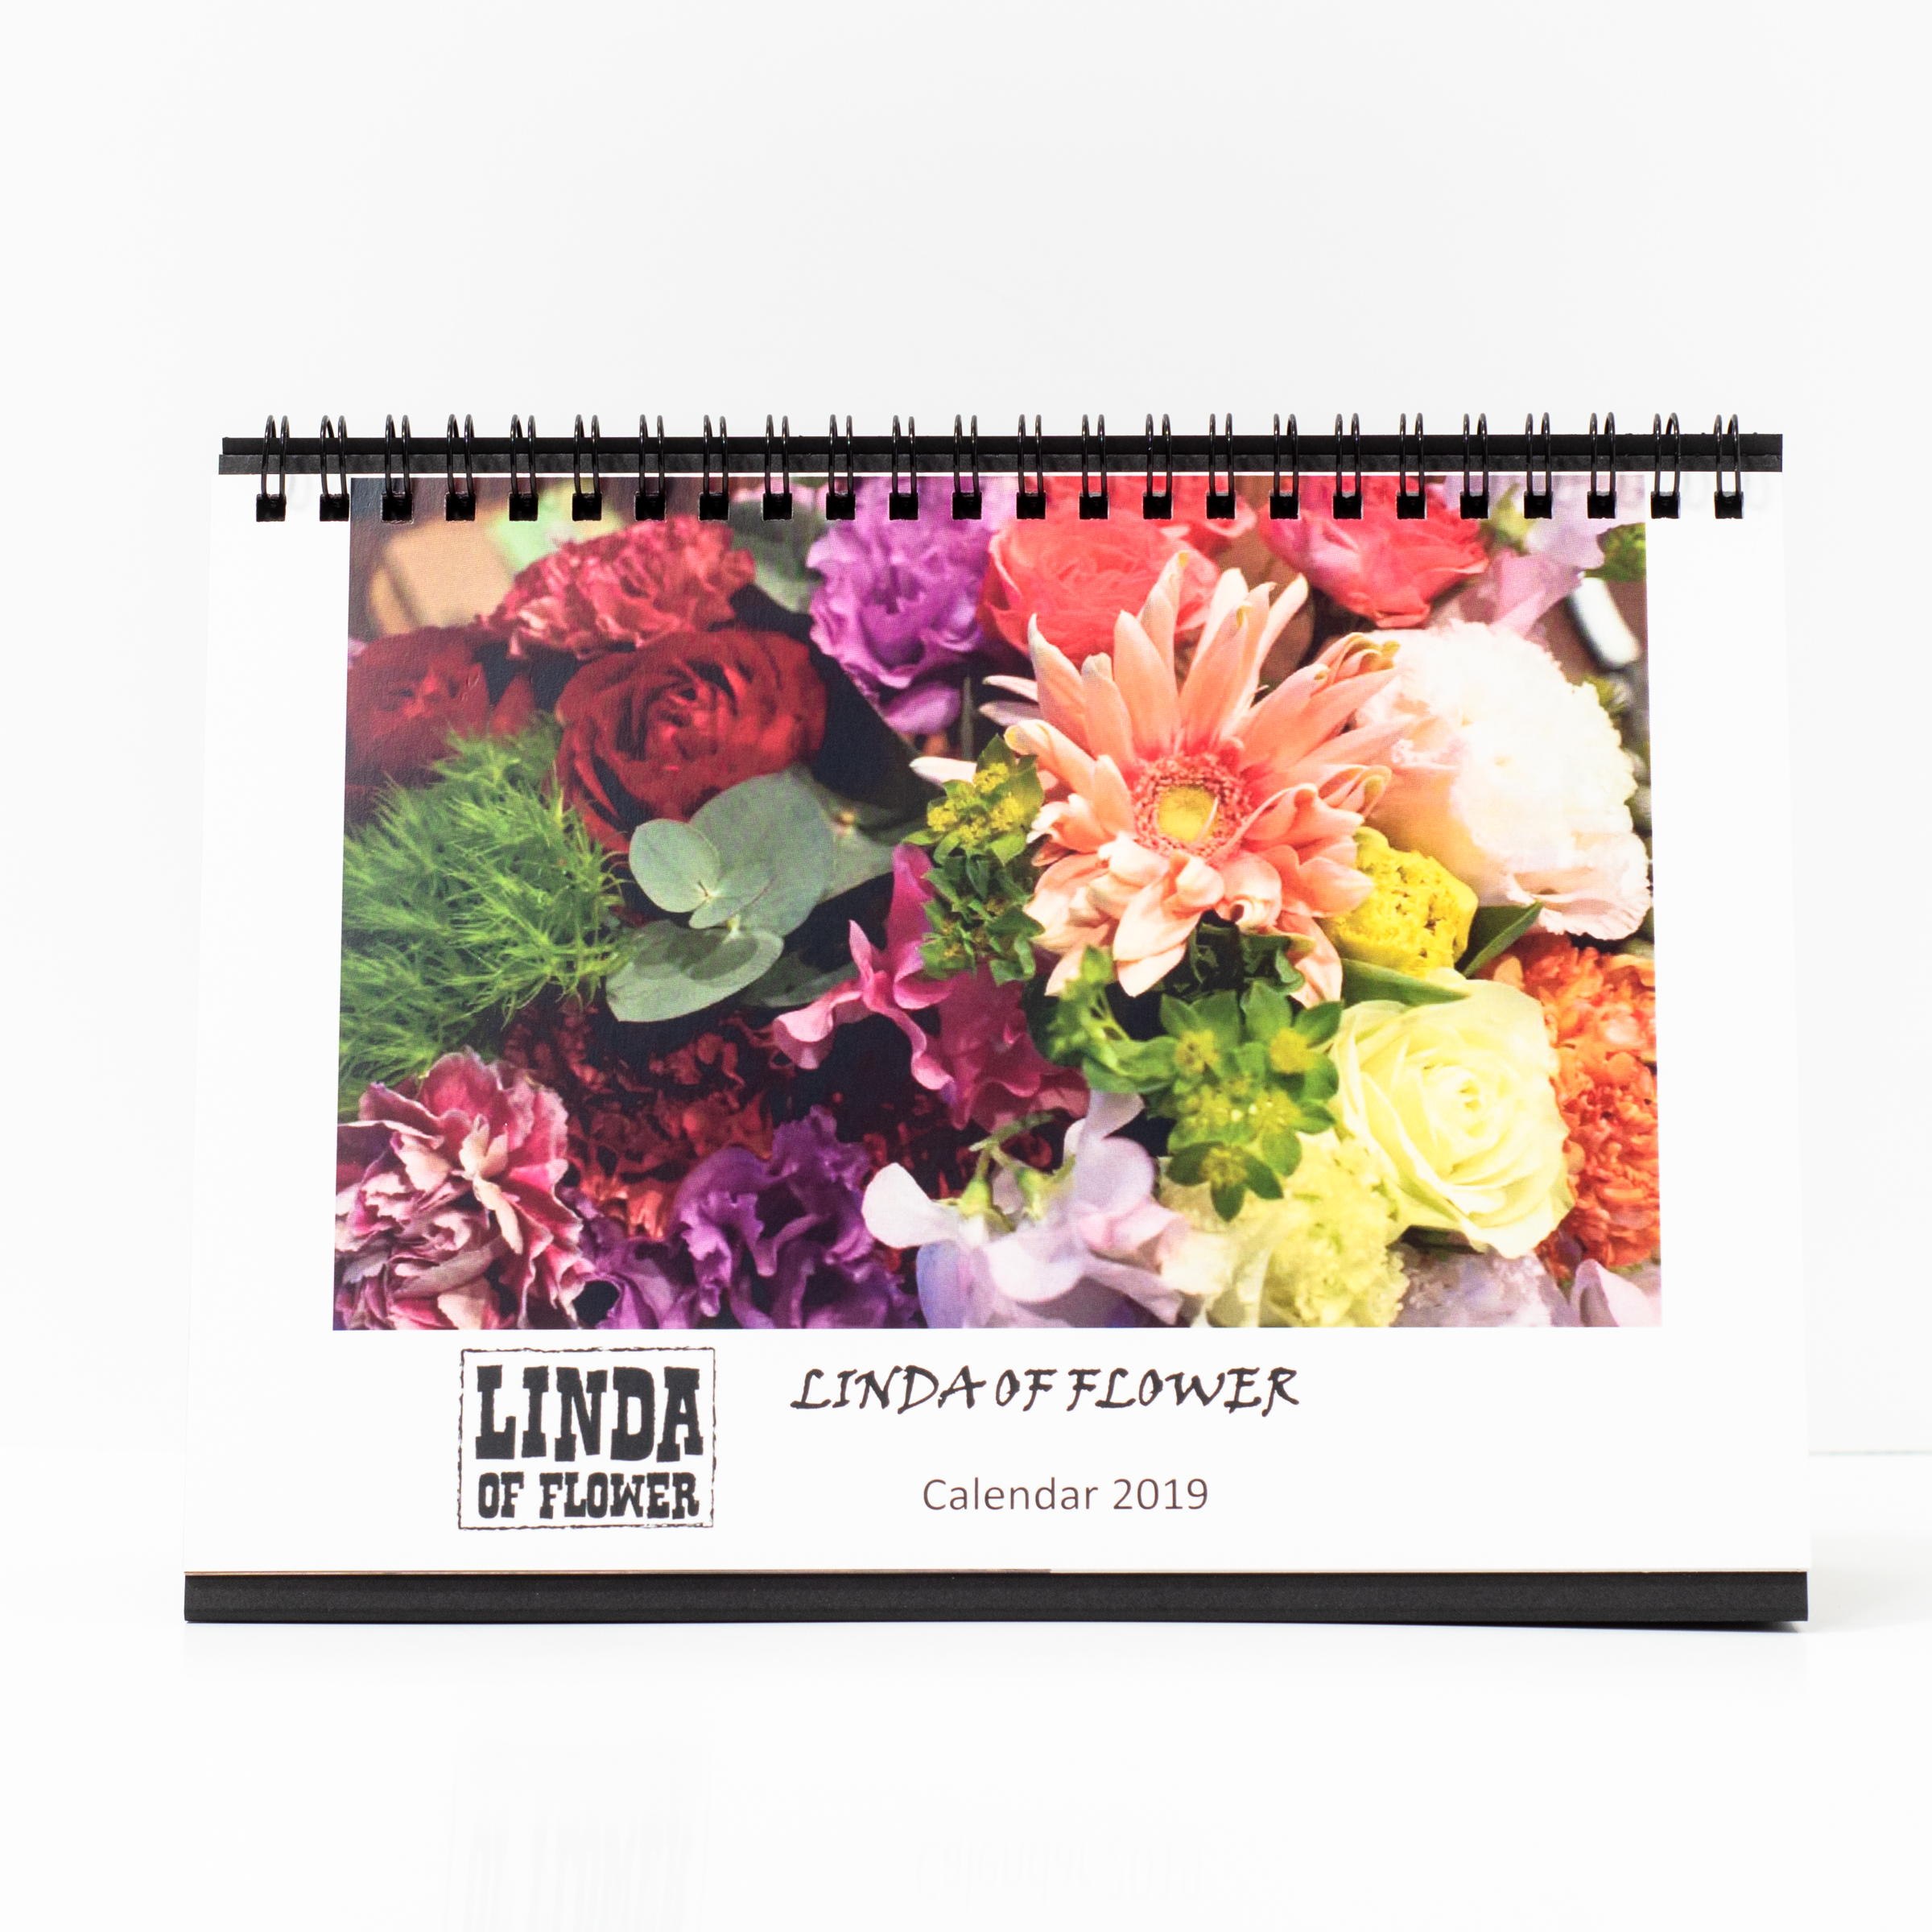 「LINDA OF FLOWER 様」製作のオリジナルカレンダー